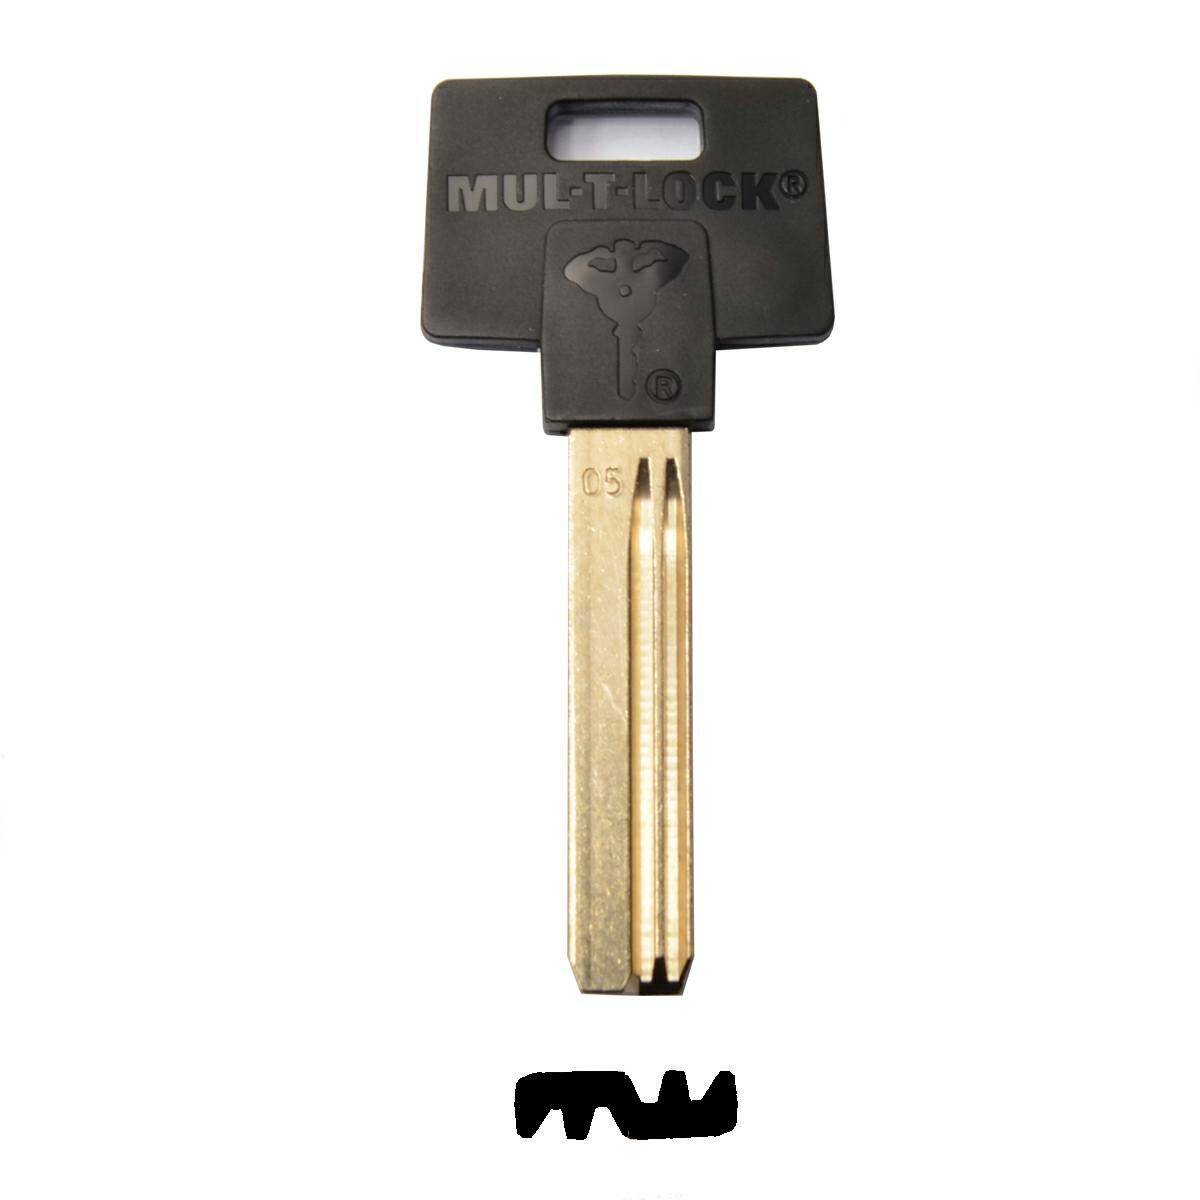 Key MUL-T-LOCK 005